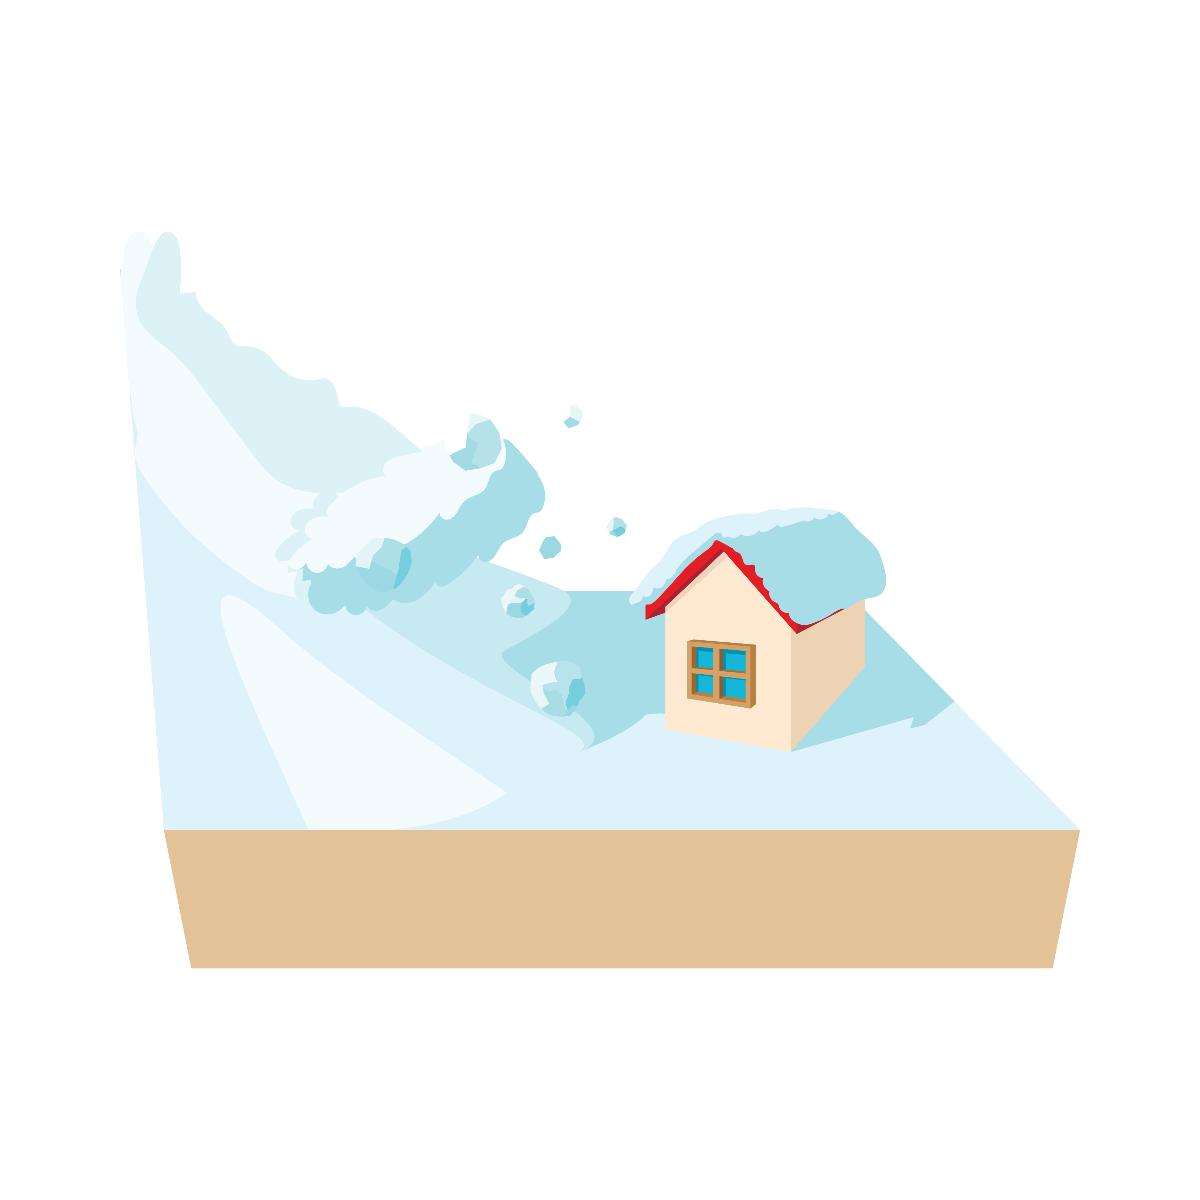 Et tegnet bilde av et hus som blir truffet av et snøskred